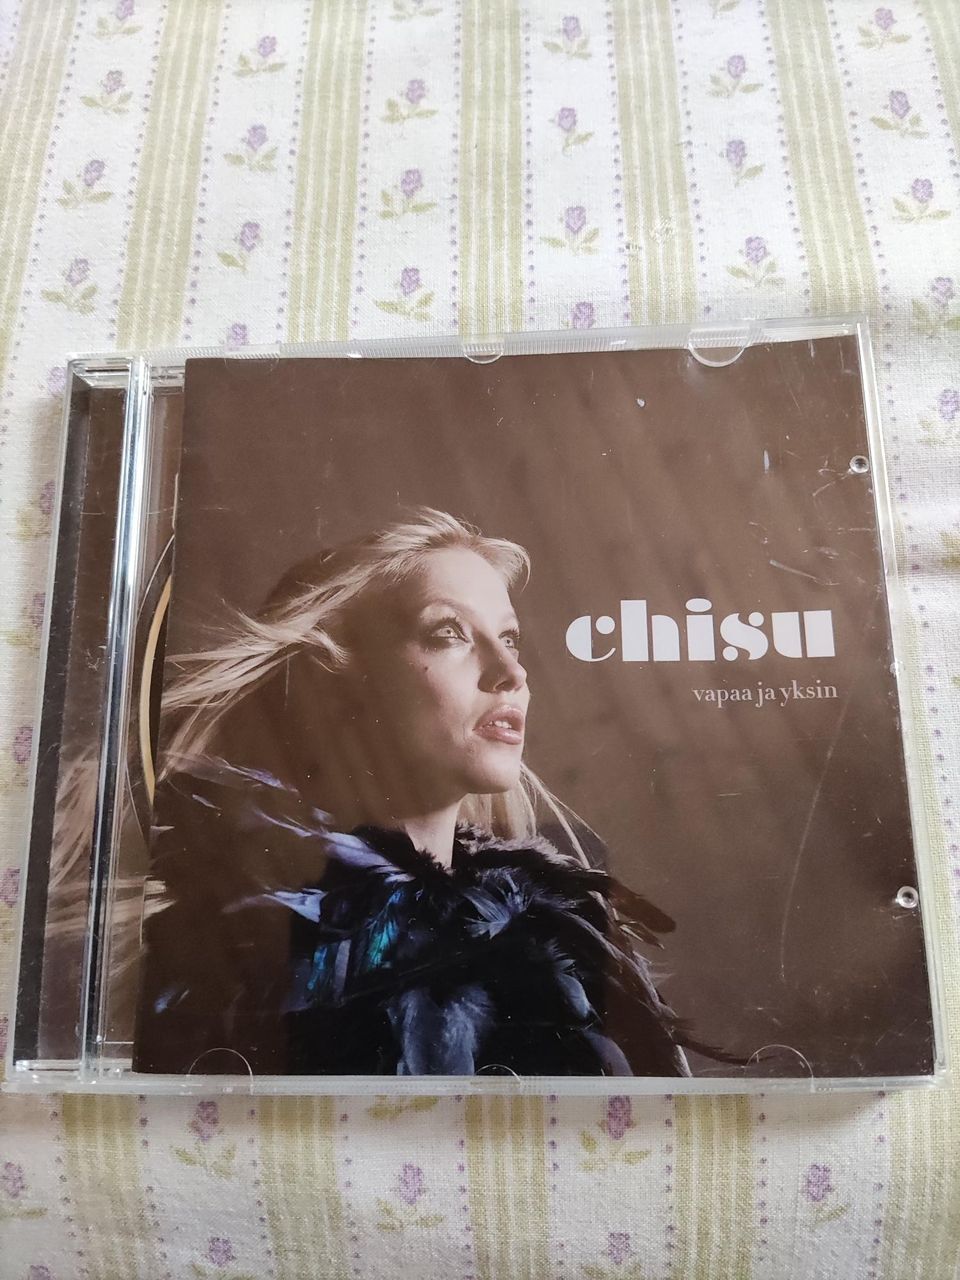 Chisu CD Vapaa ja Yksin